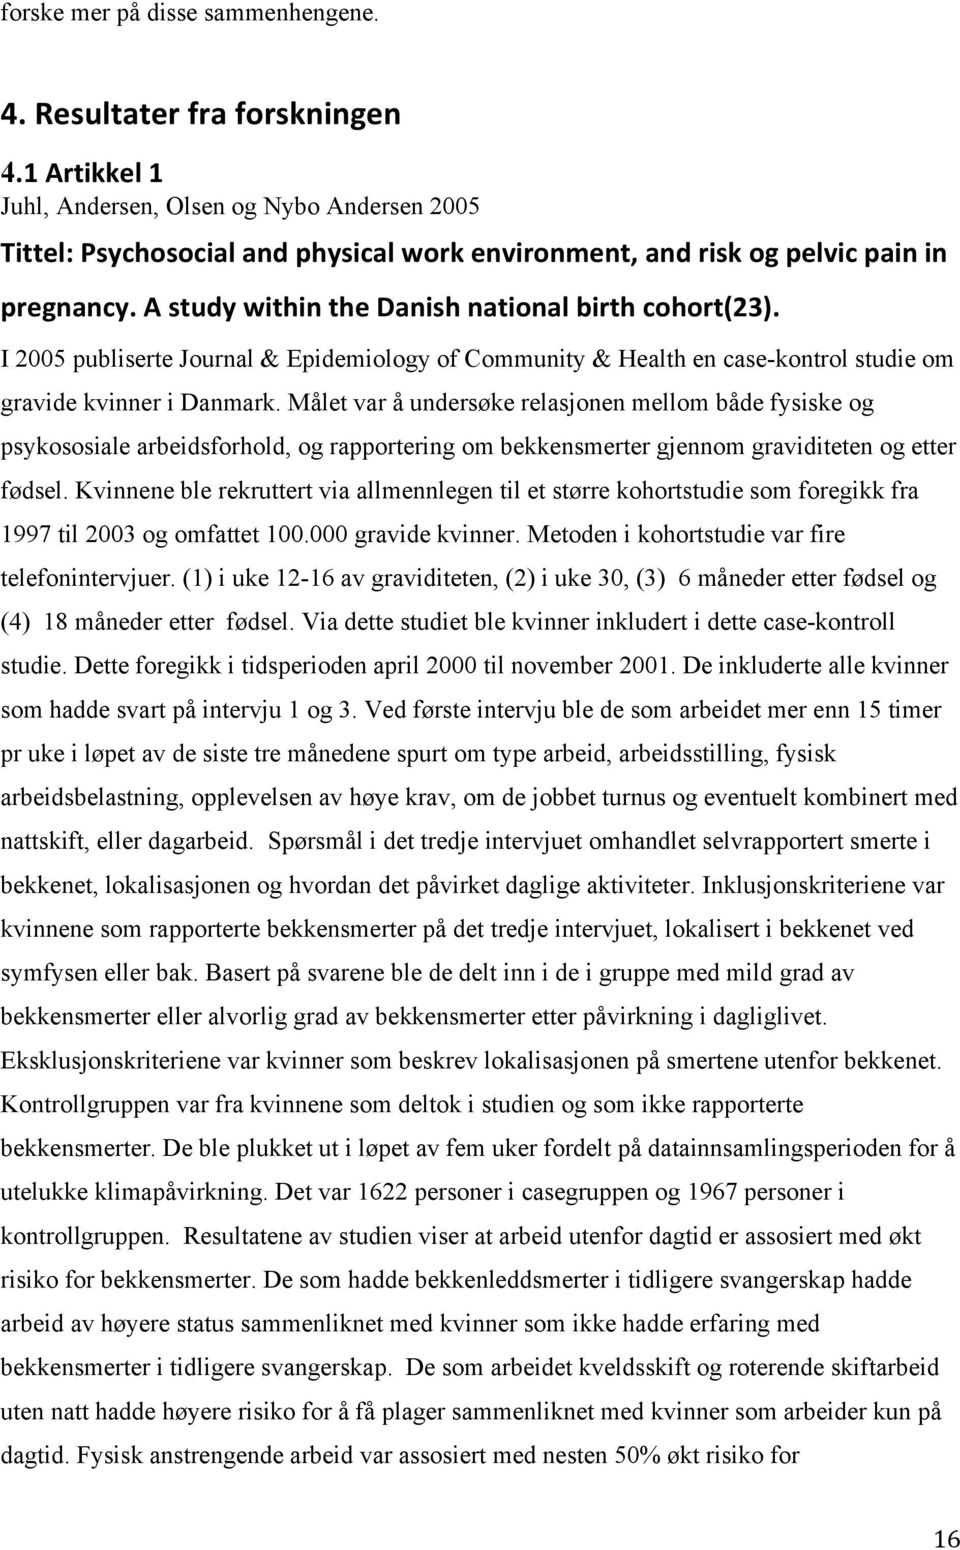 I 2005 publiserte Journal & Epidemiology of Community & Health en case-kontrol studie om gravide kvinner i Danmark.